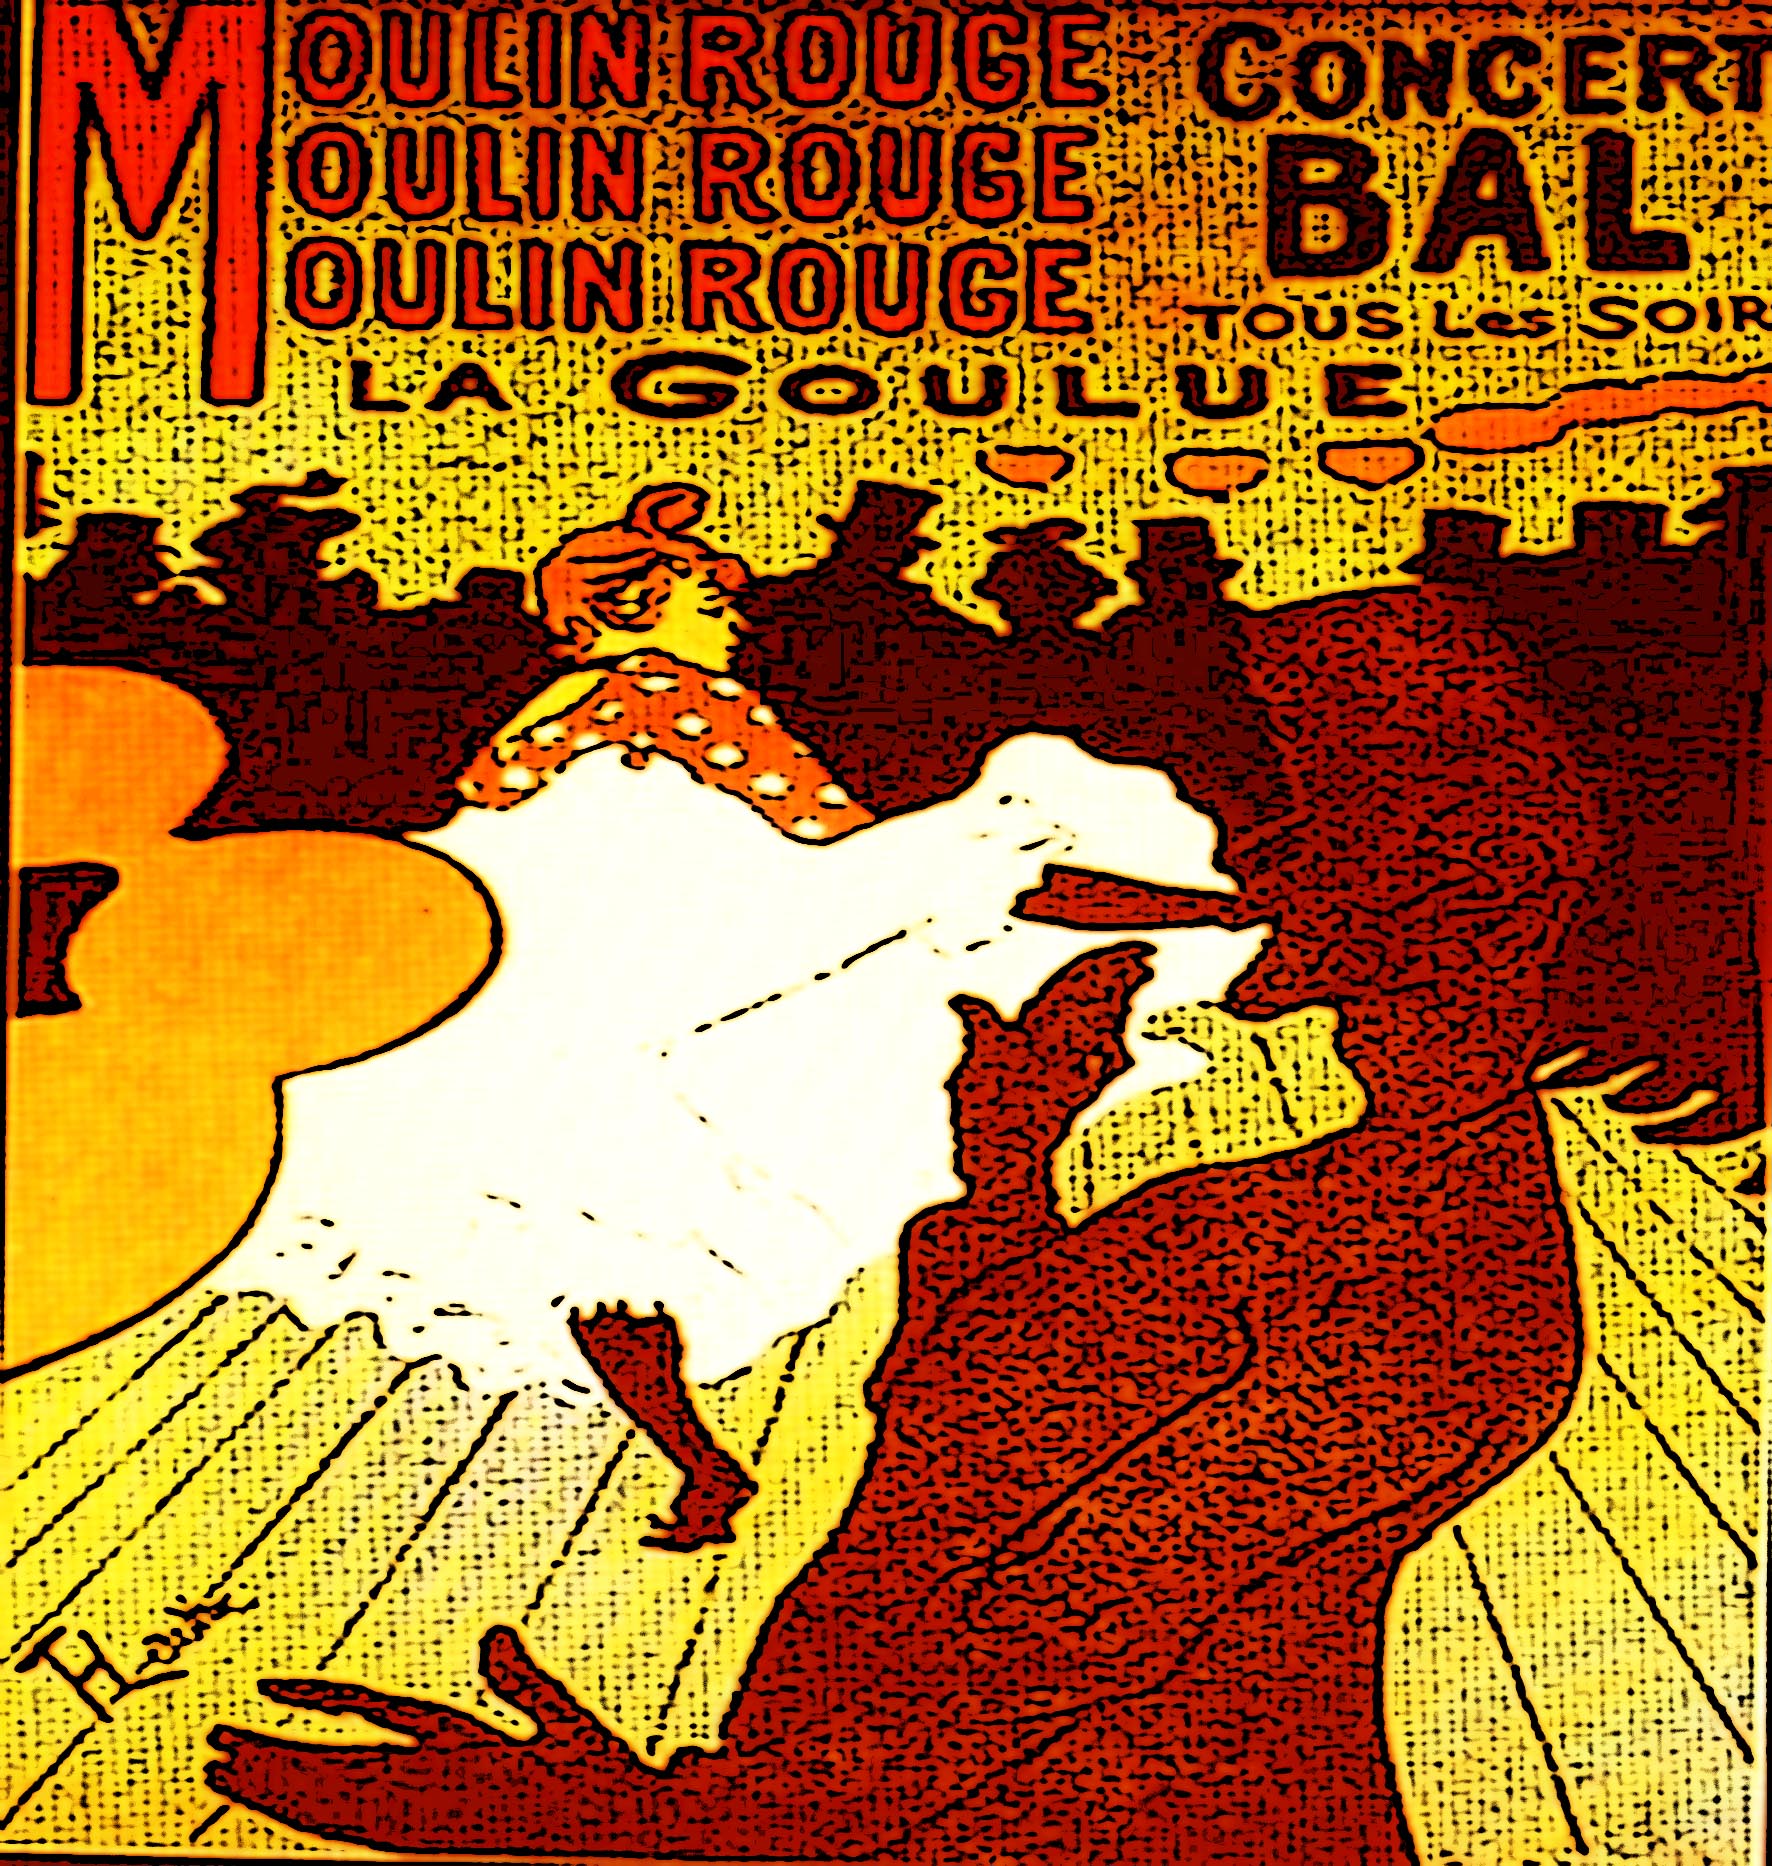 Immagine del poster 'La Goulue' (Per leggerne la descrizione proseguire nel link). La danzatrice balla circondata da figure scure.